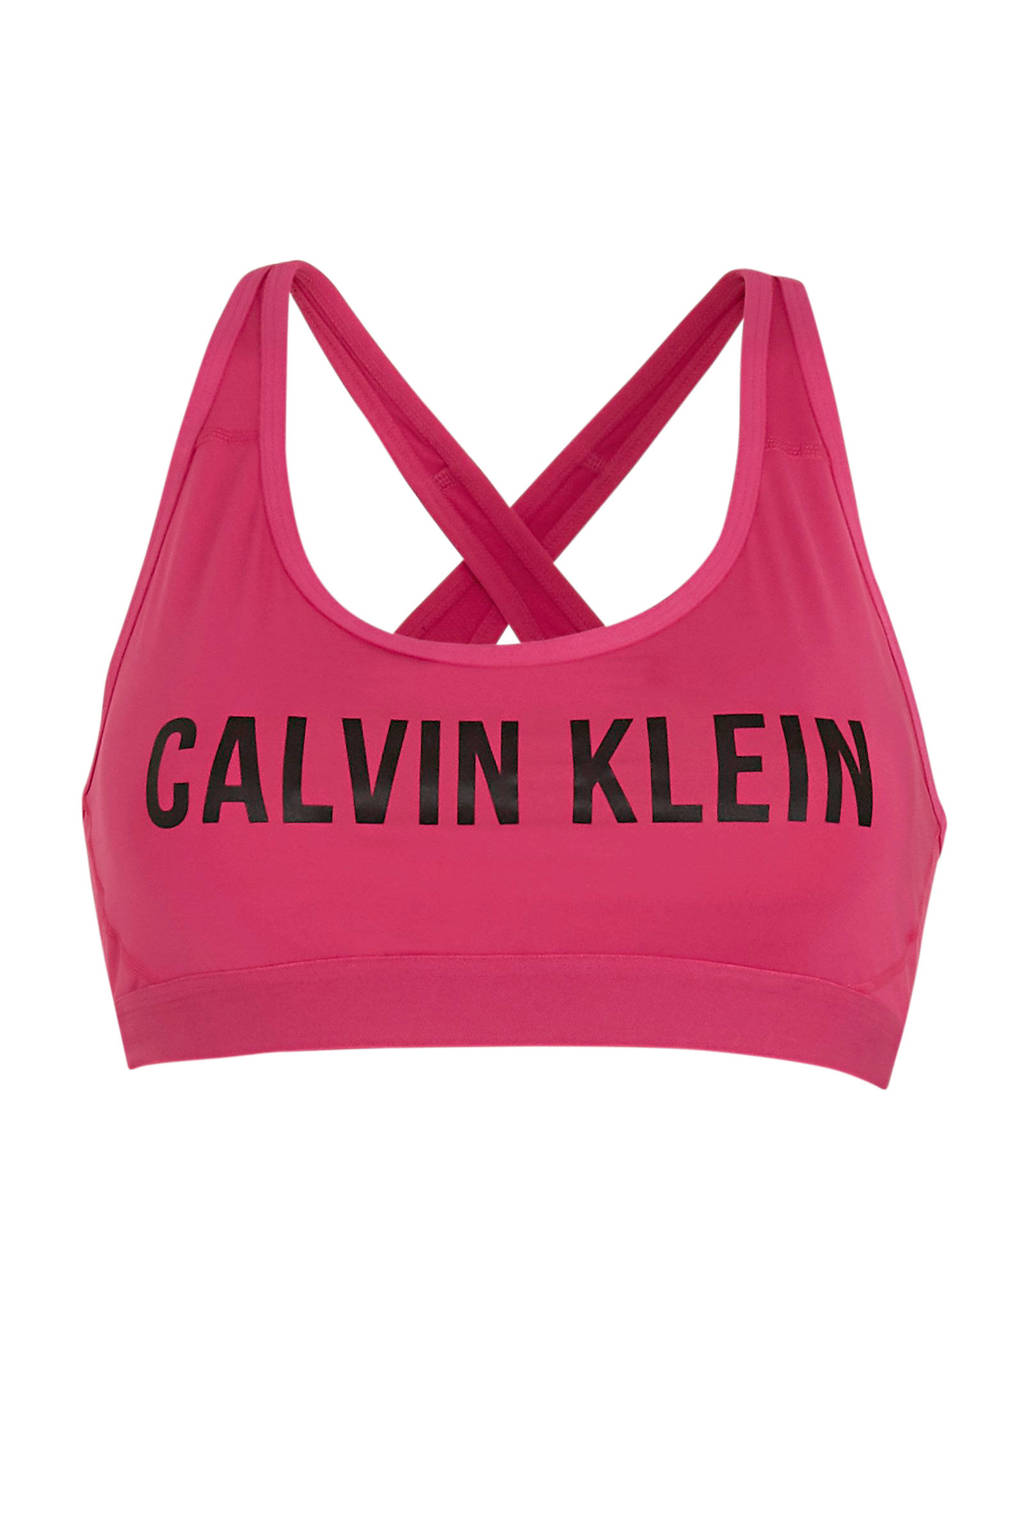 CALVIN KLEIN PERFORMANCE level 1 sporbh roze/zwart, Roze/zwart